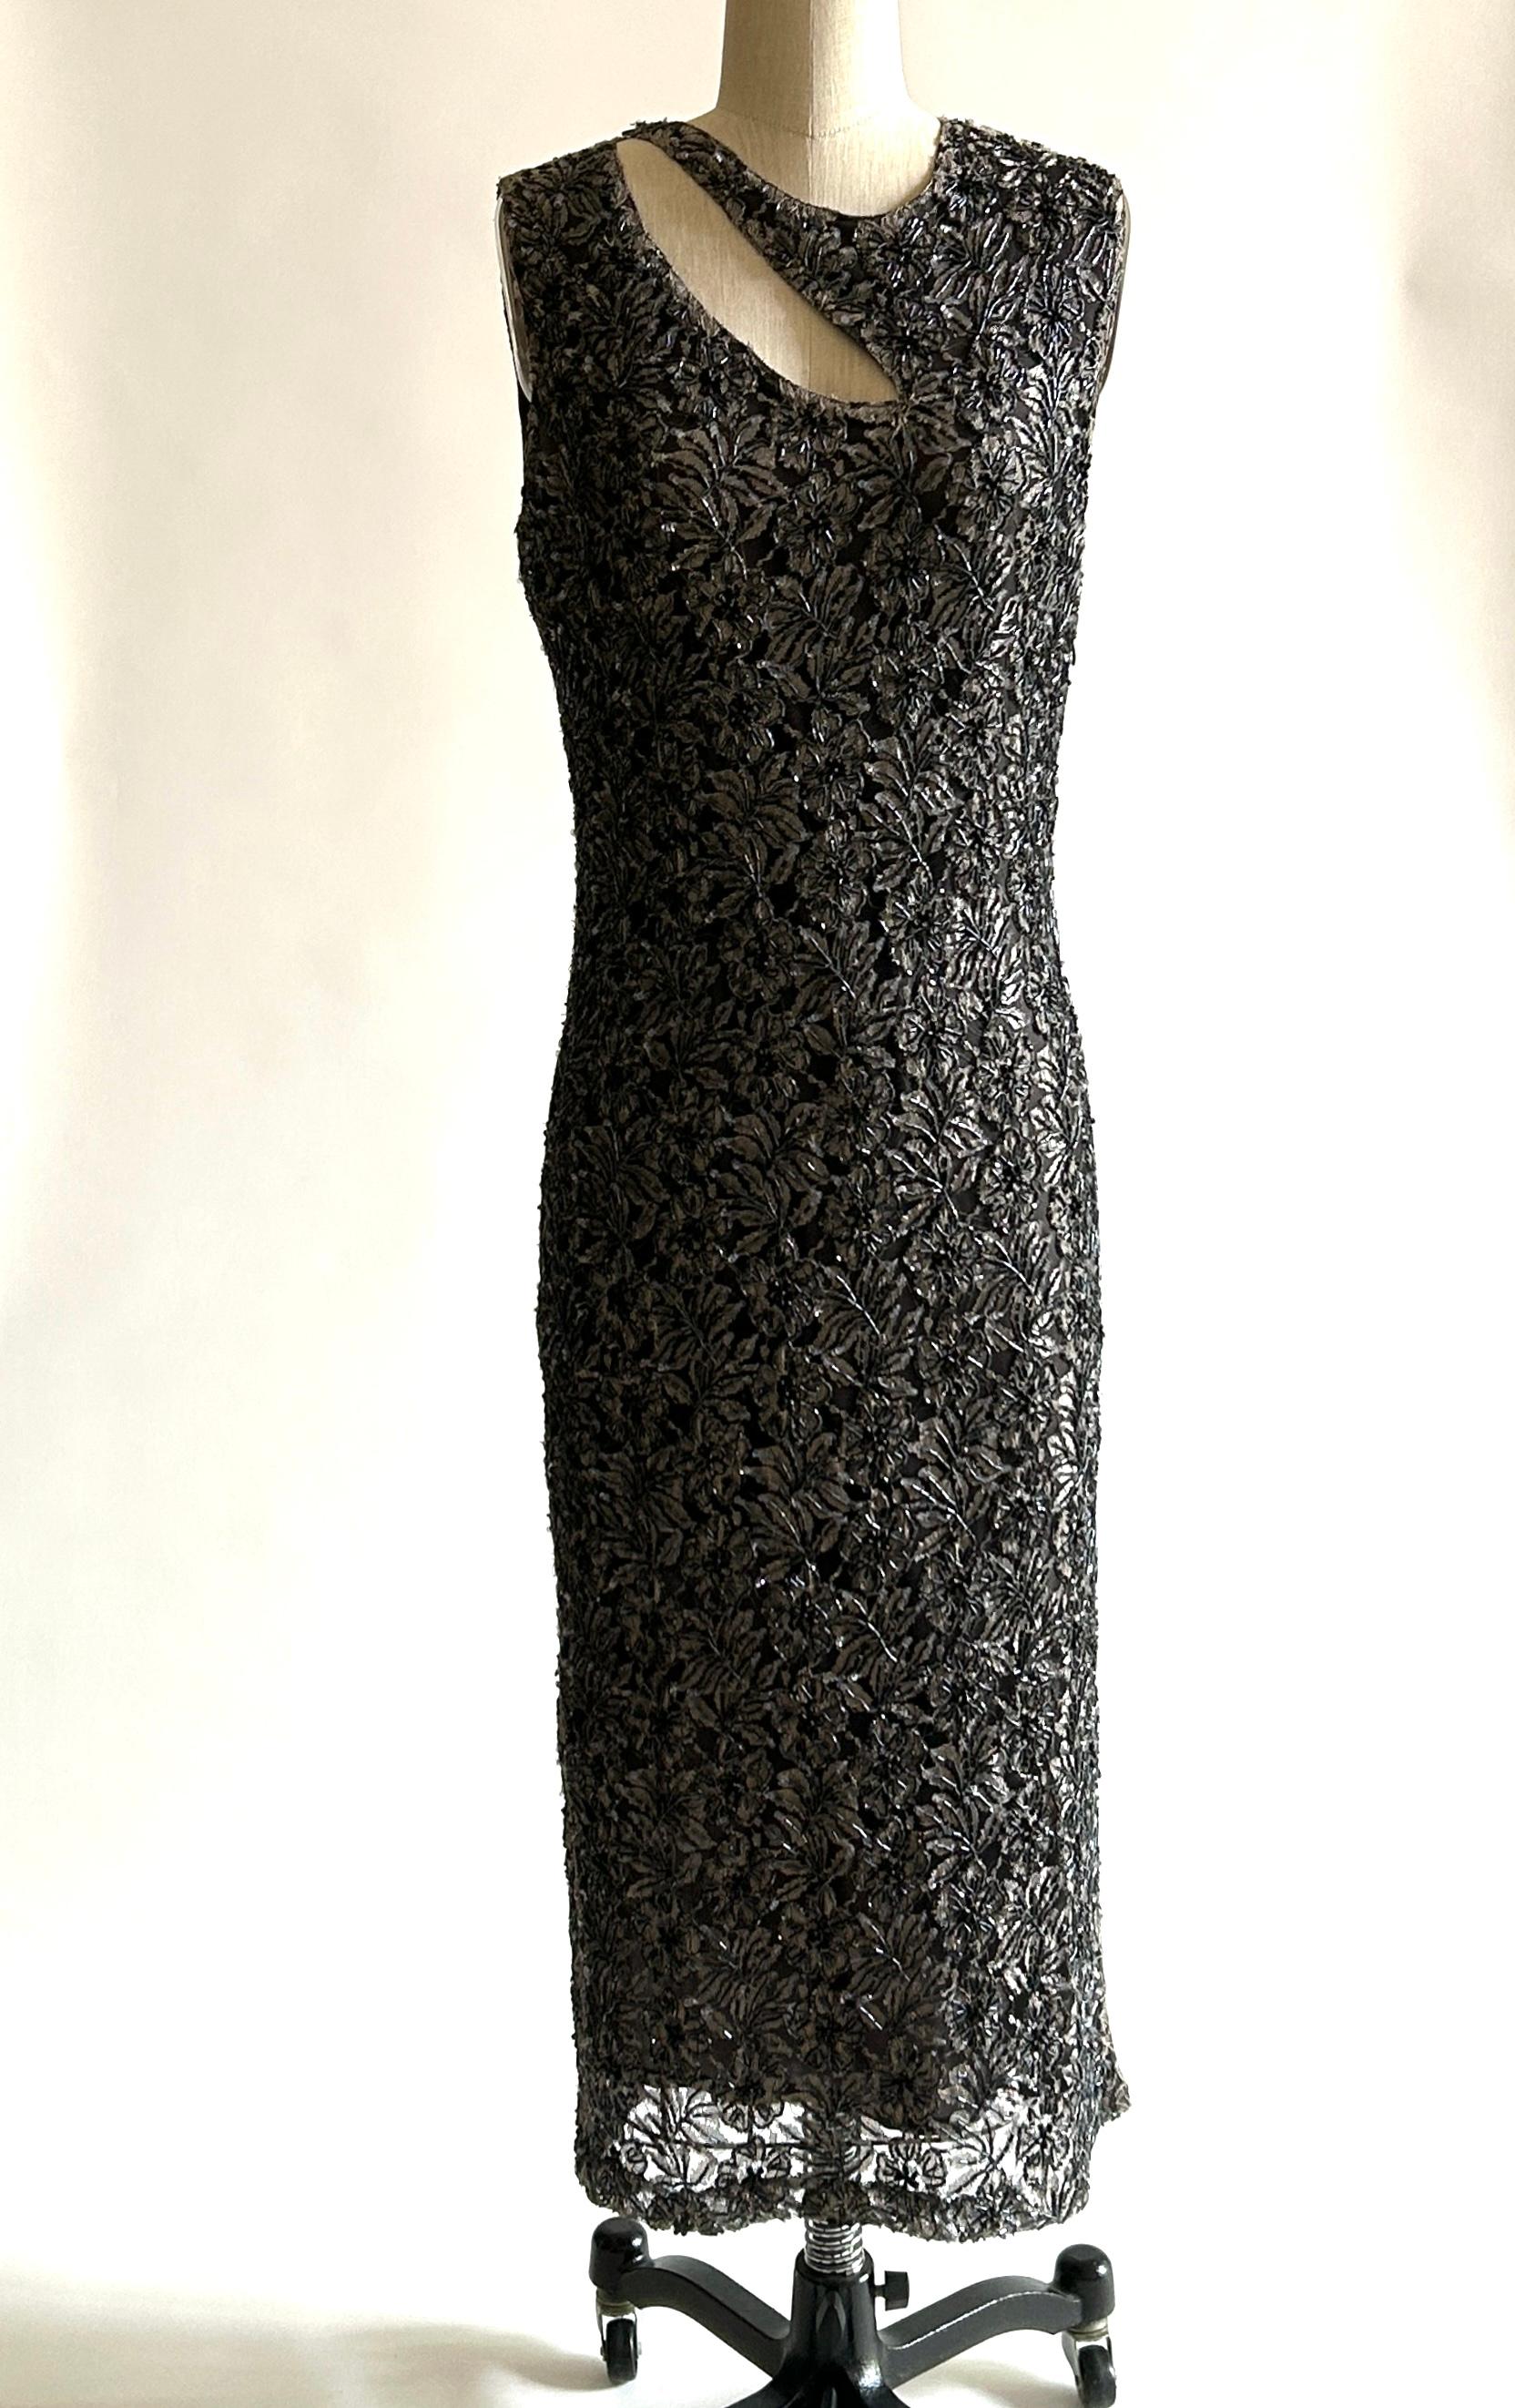 Robe midi vintage Alexander McQueen des années 1990, sans manches, en dentelle taupe et noire brodée de perles grises et de perles de jais sur une doublure gris brunâtre. Des lanières traversent la poitrine et des boutons sont placés sur les épaules